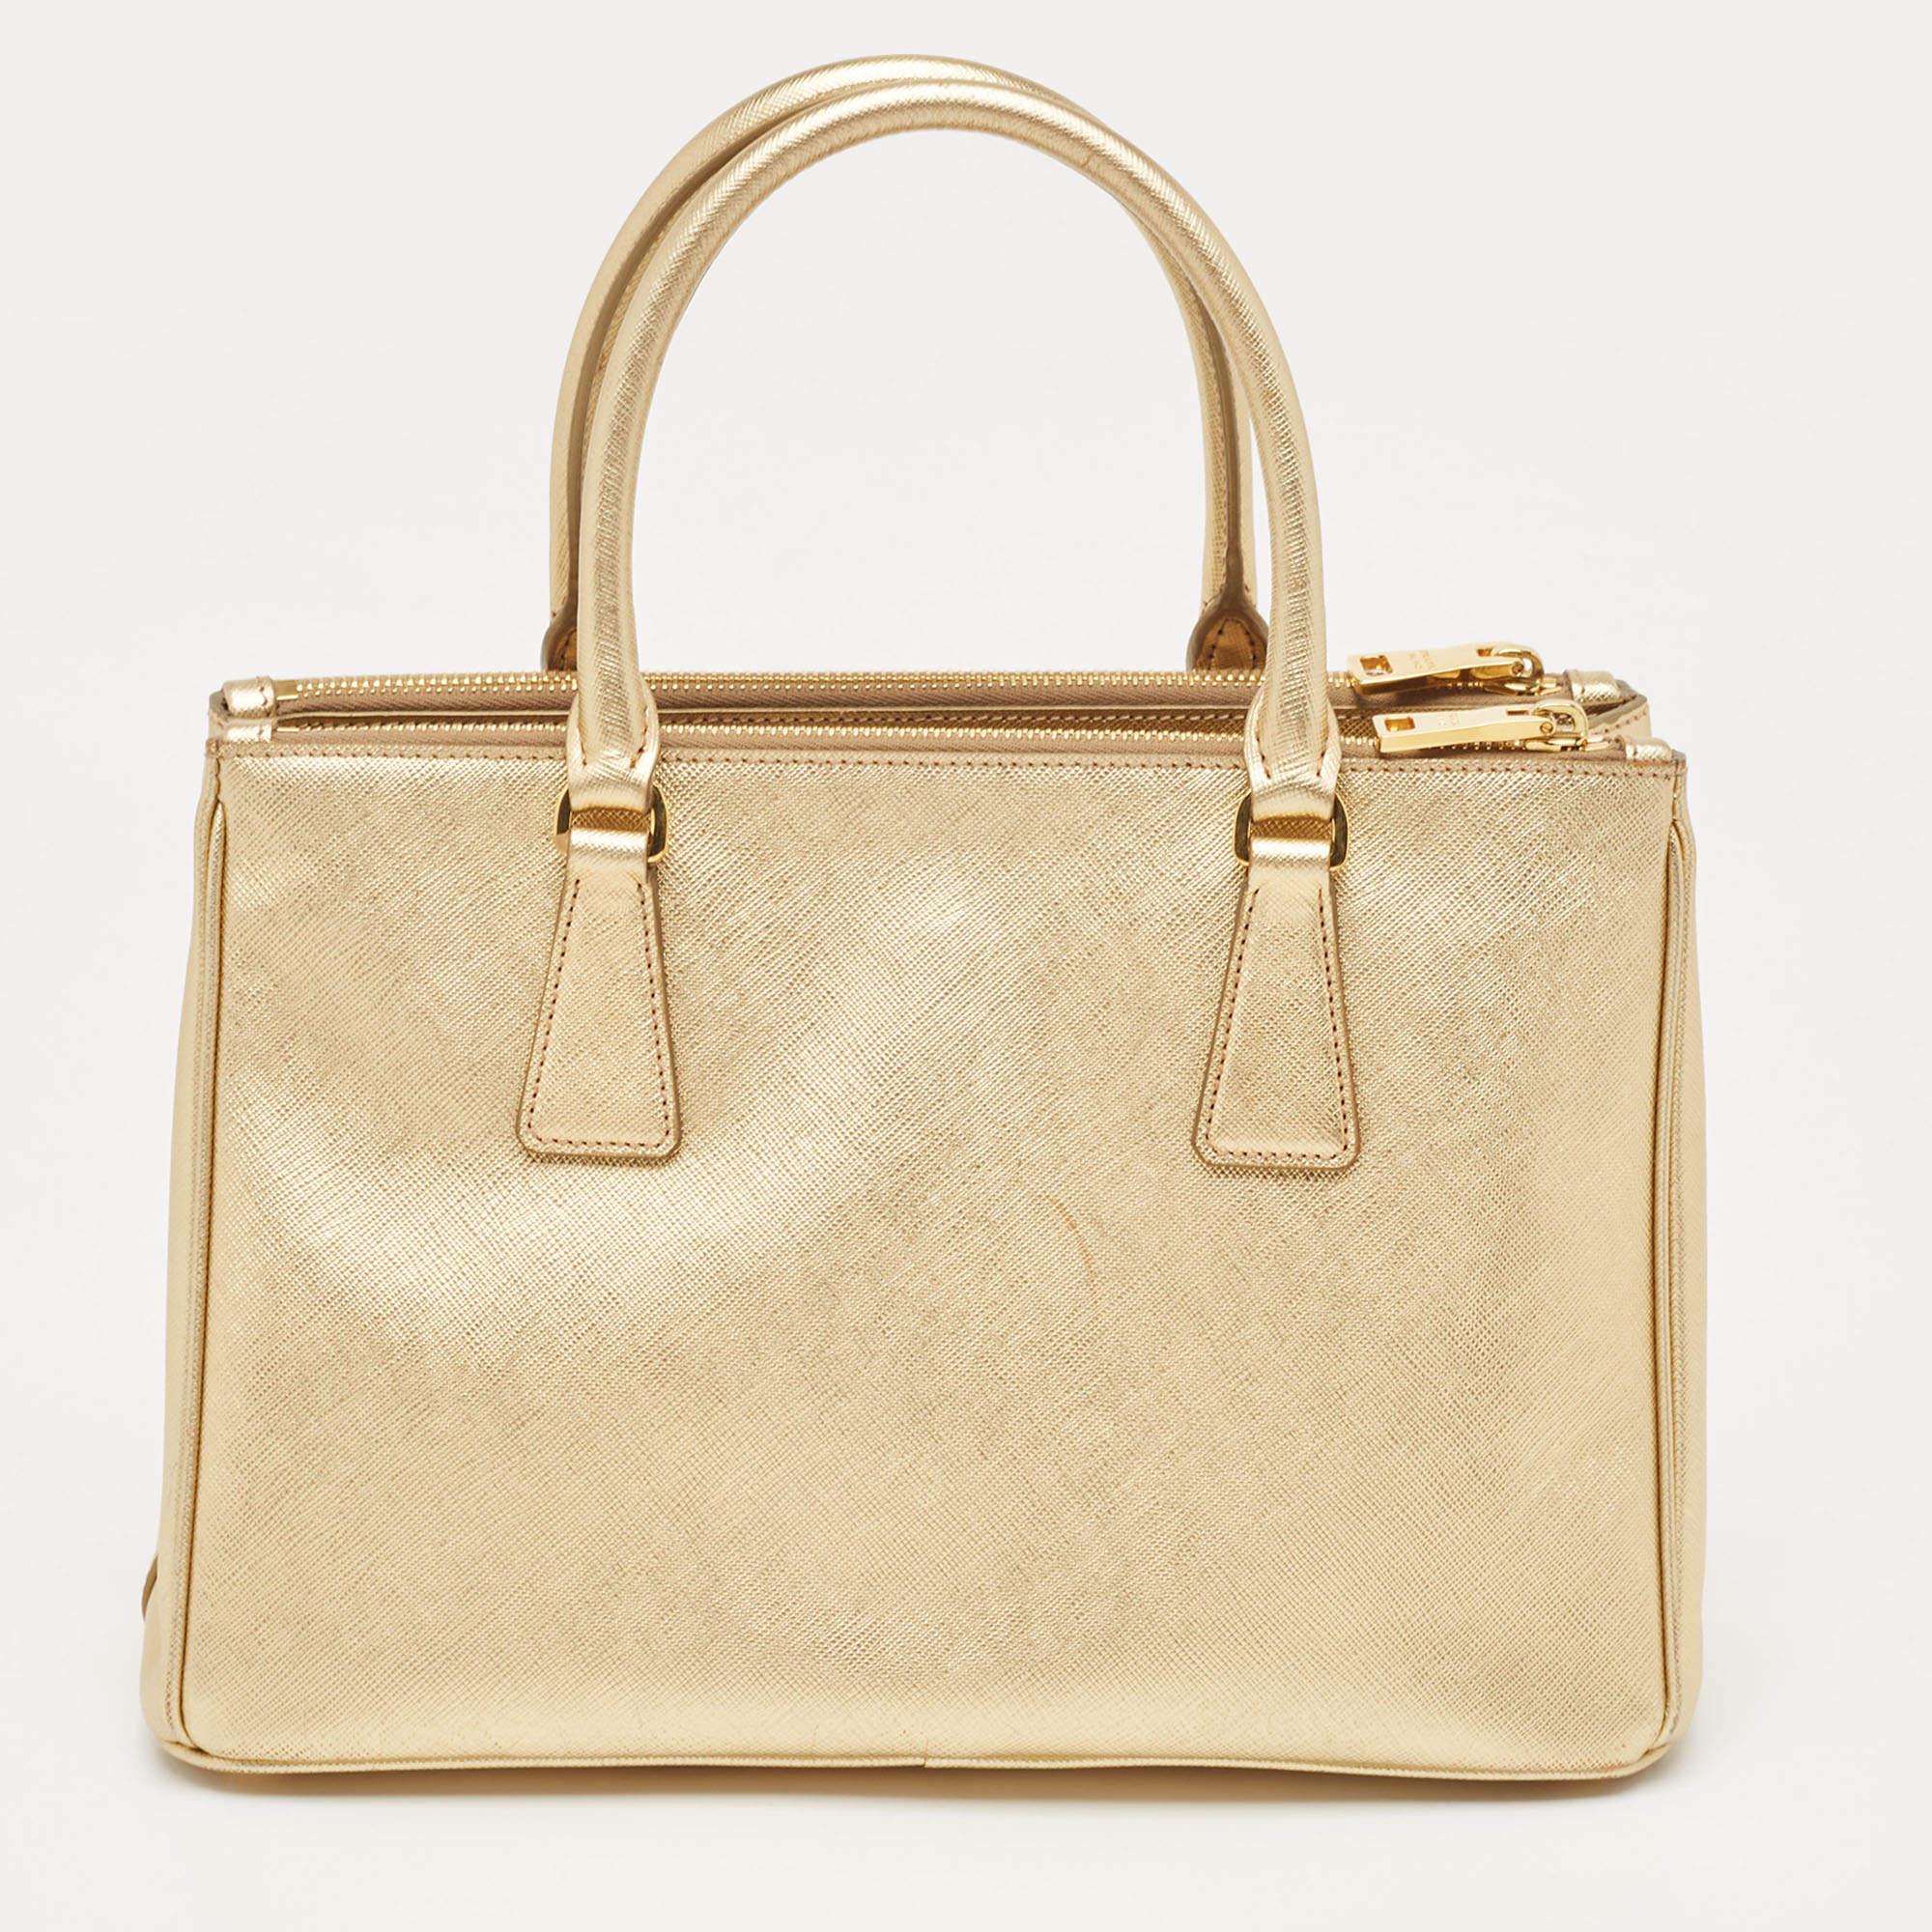 Diese goldene Tasche von Prada ist ein Beispiel für die feinen Designs der Marke, die durch ihre geschickte Verarbeitung einen klassischen Charme versprühen. Es handelt sich um eine funktionelle Kreation mit einer gehobenen Ausstrahlung.

Enthält: